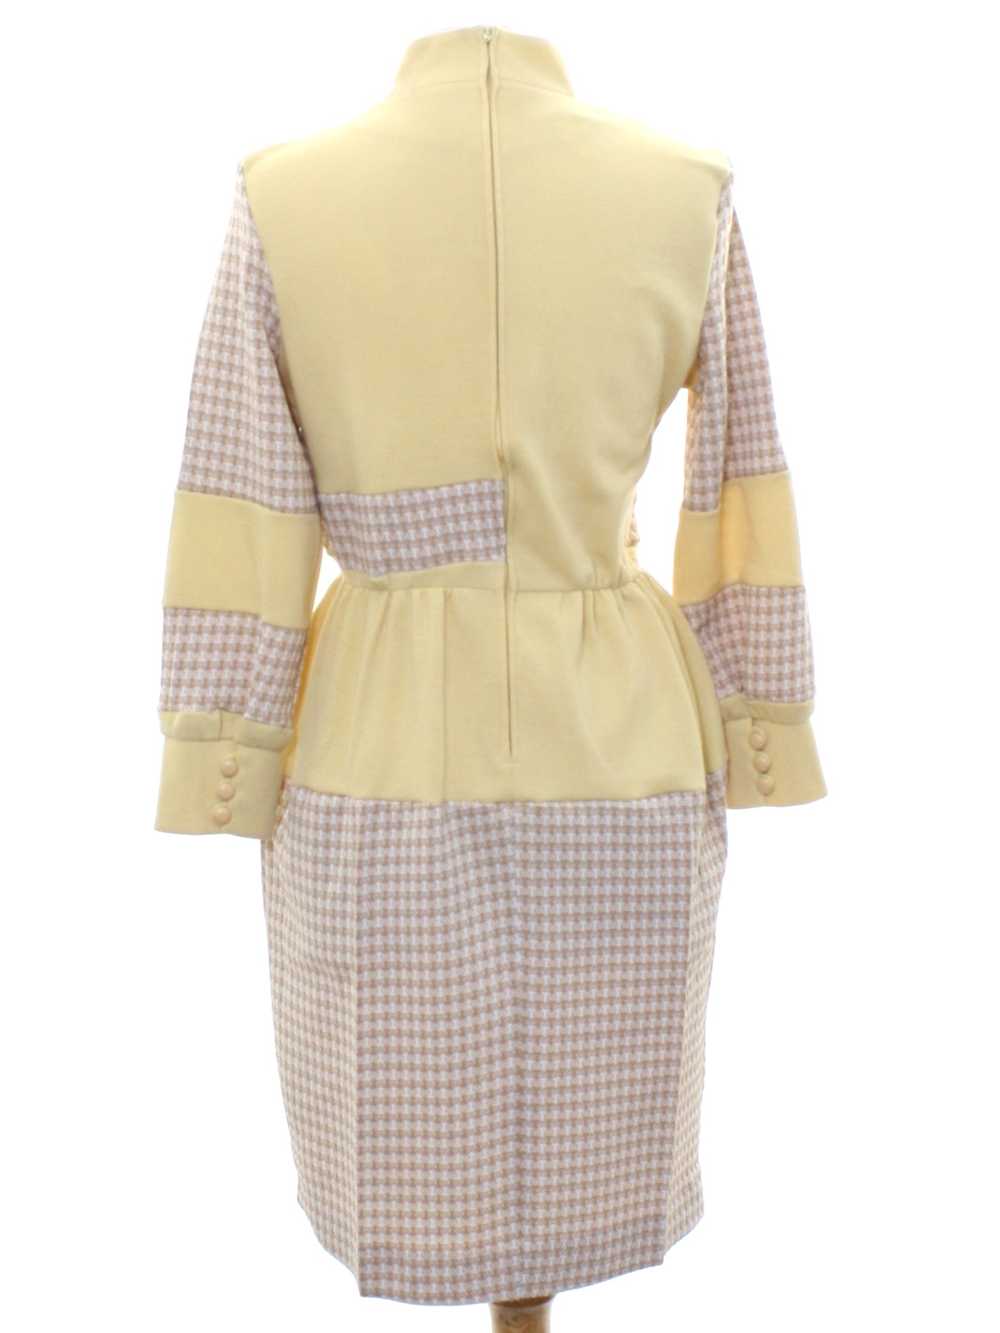 1970's Butte Knit Mod Knit Dress - image 3